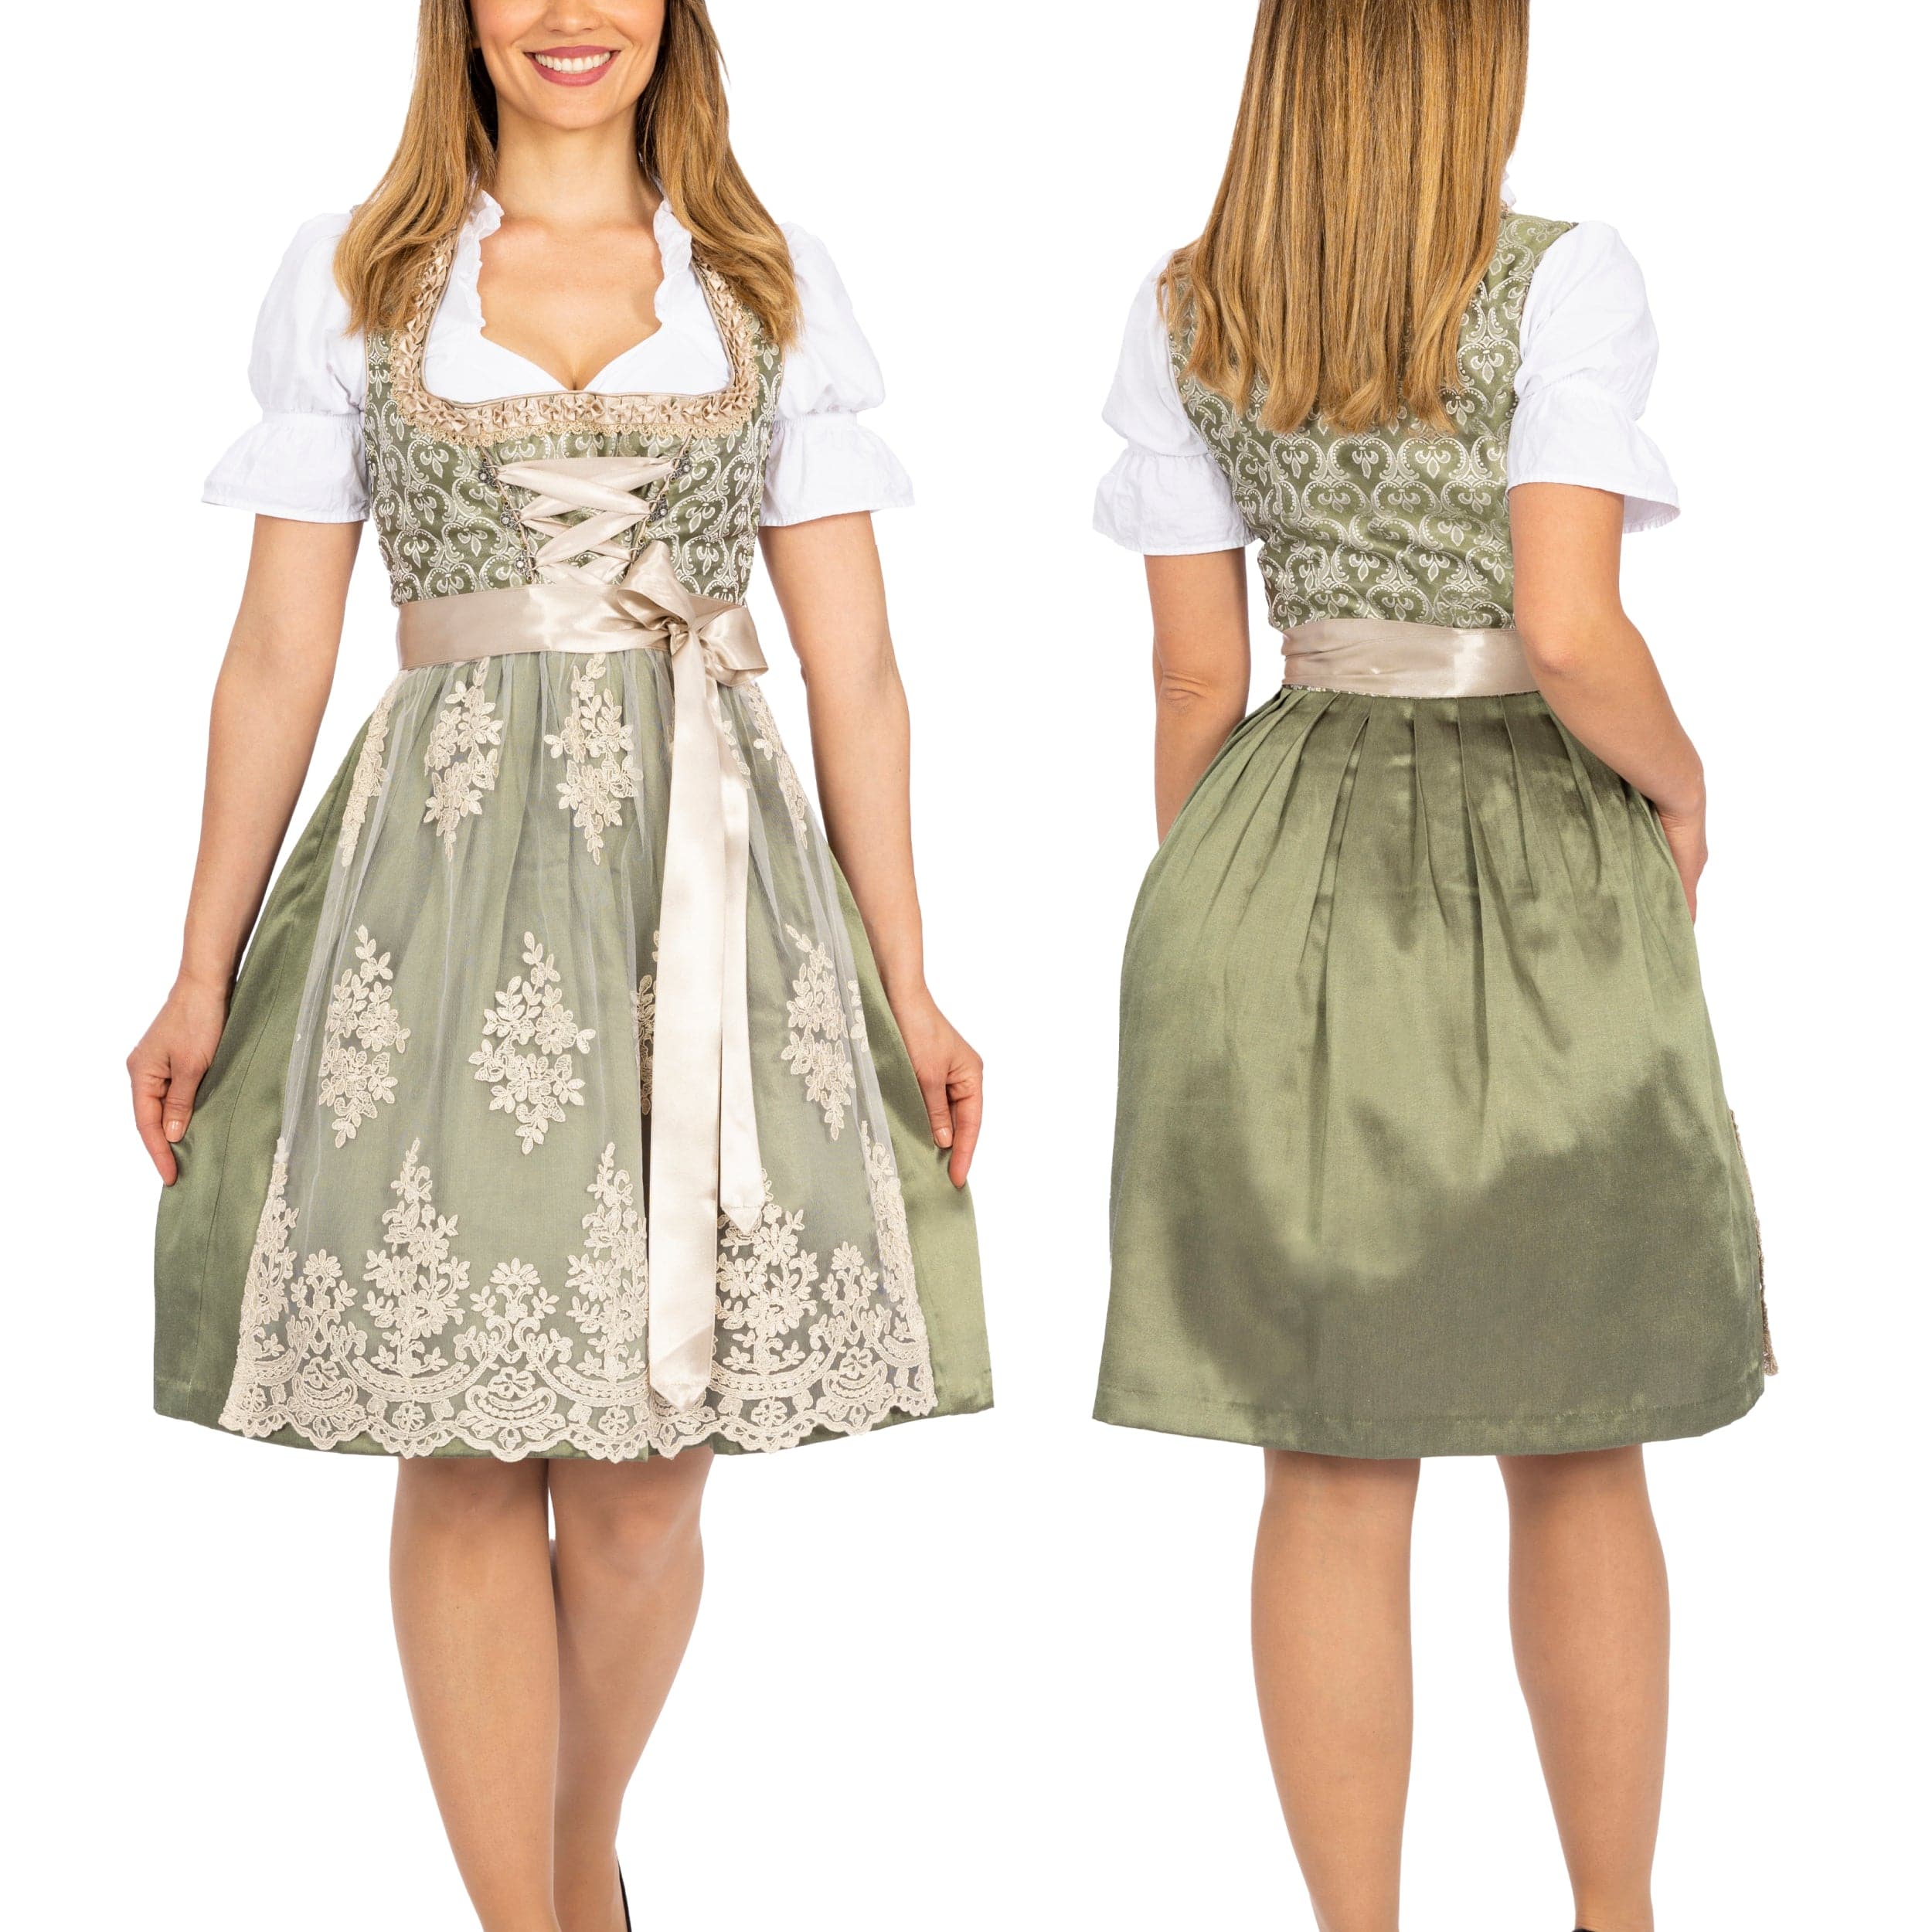 Bavaria Trachten BAVARIA TRACHTEN Women's German Dirndl Dress - Authentic Oktoberfest Attire - Green Gold Oktoberfest 